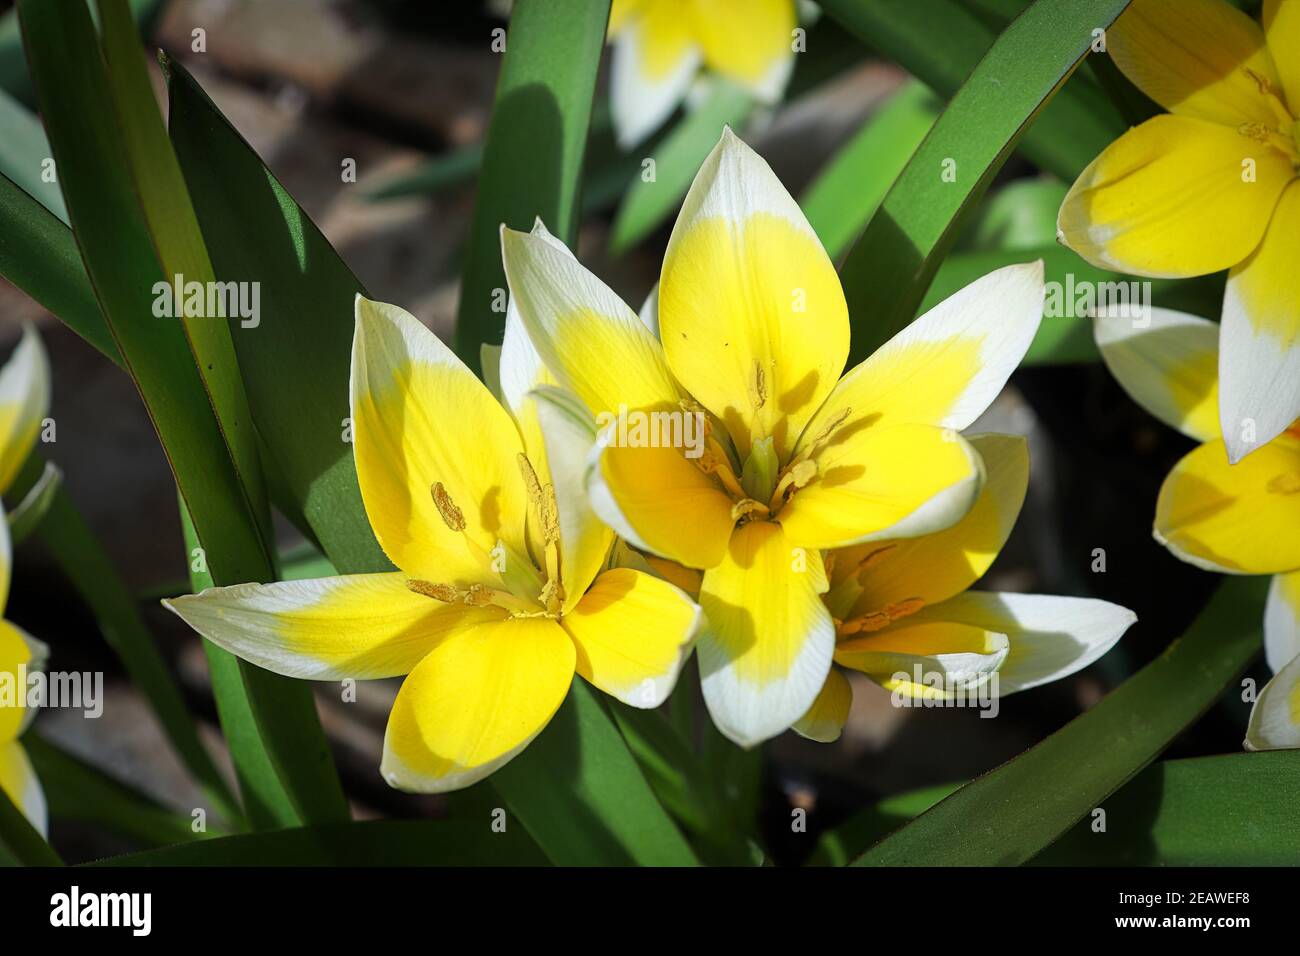 Closeup of the dasystemon tarda tulip flowers Stock Photo